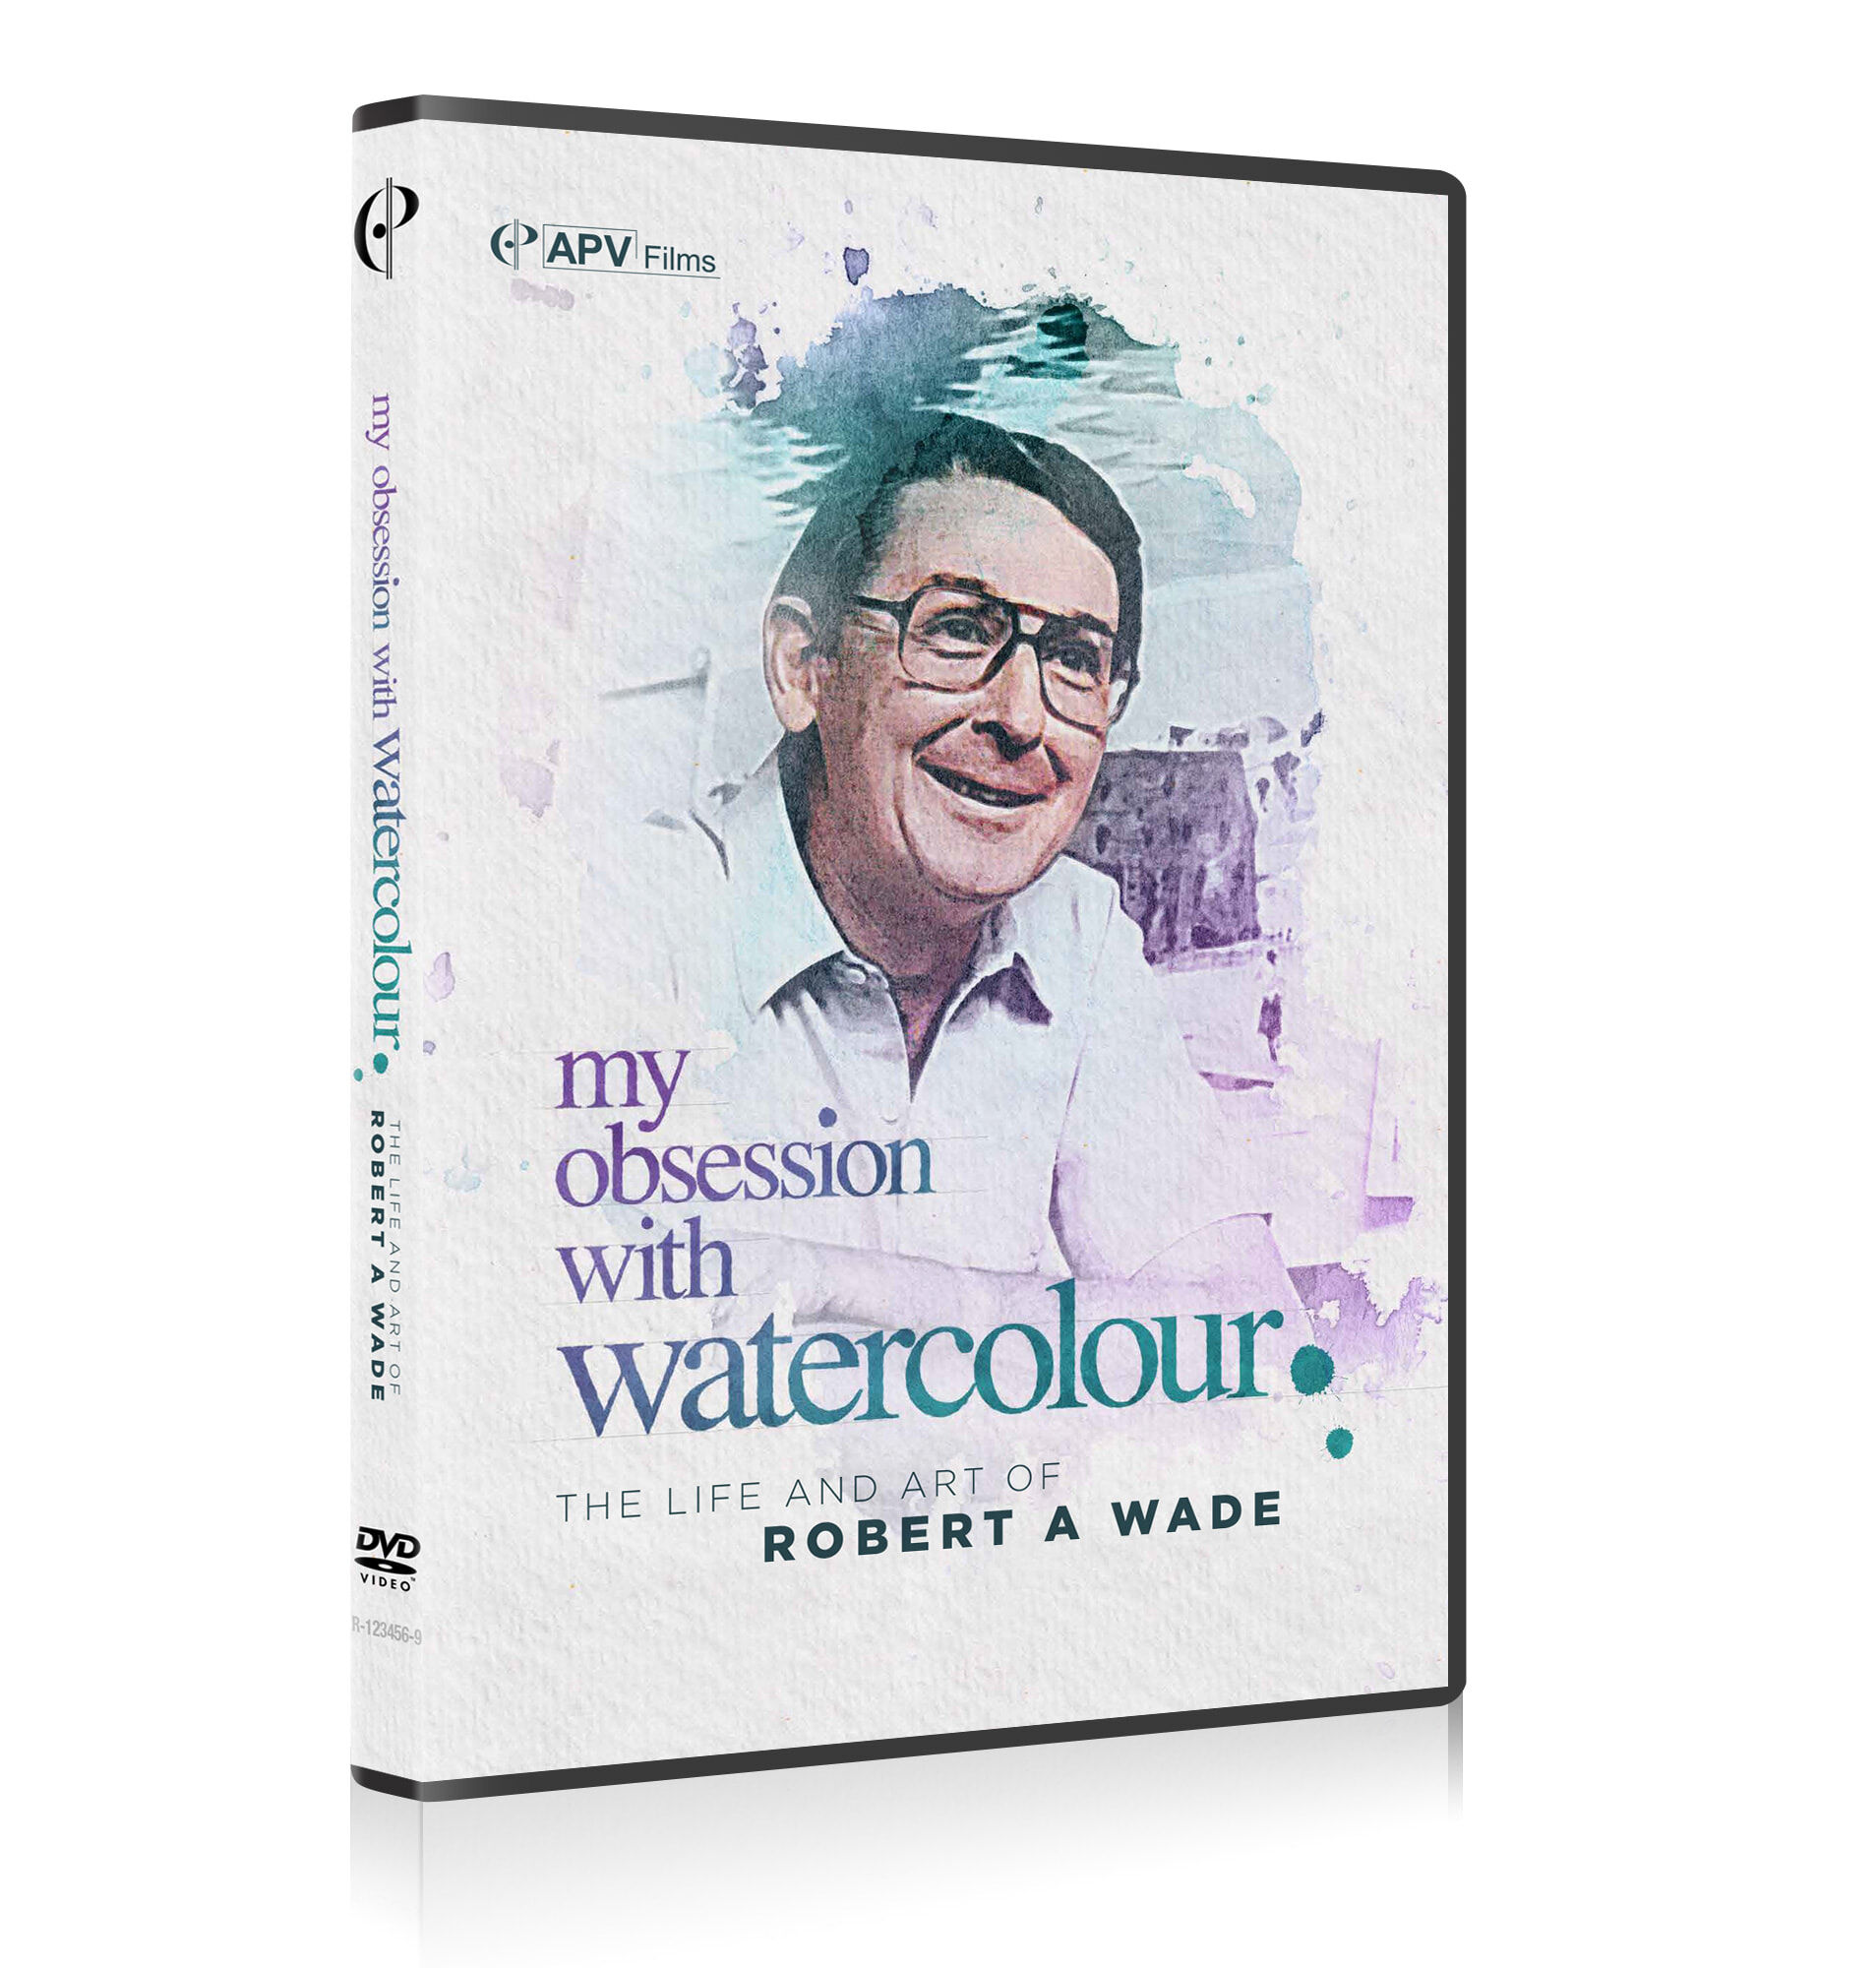 Watercolour DVD image